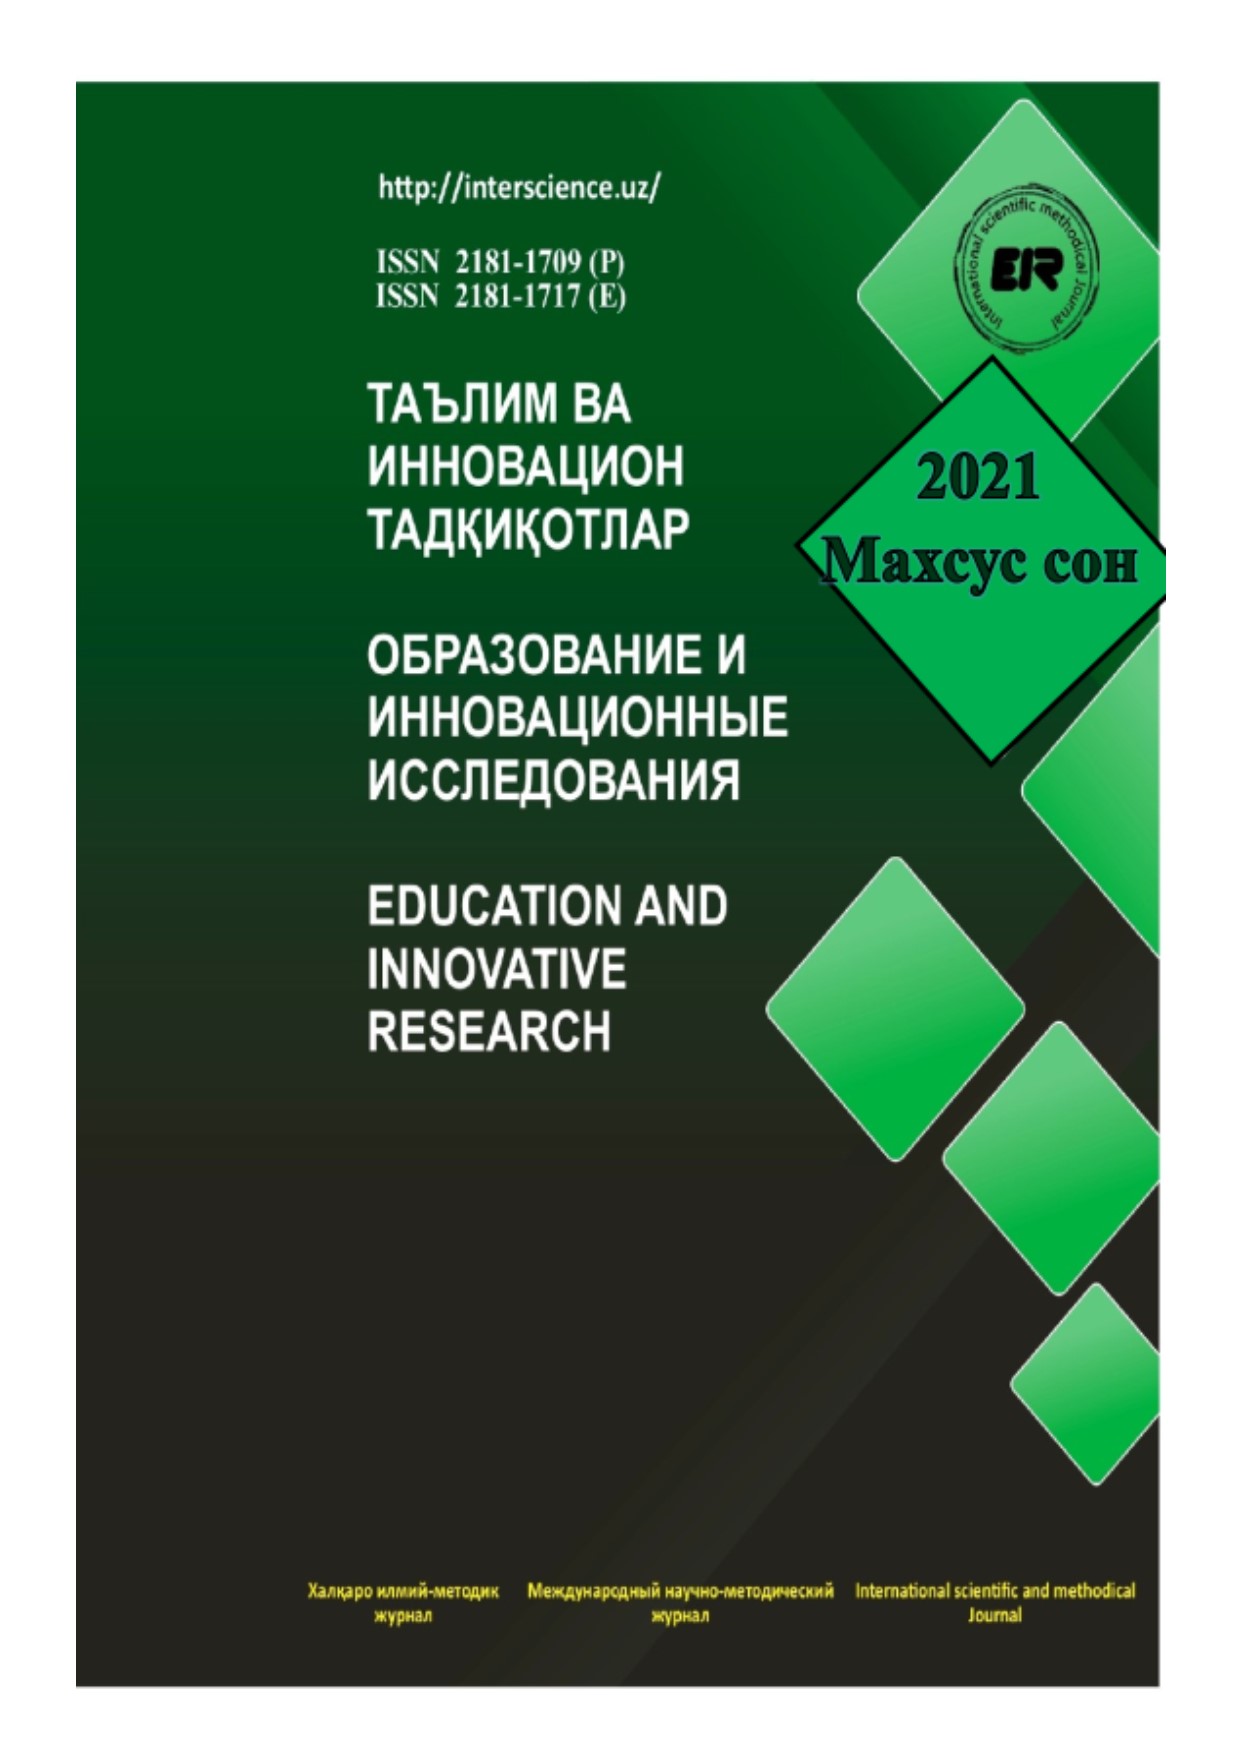 					Показать Том 2 № 6 (2021): Международный научно-методический журнал образования и инновационных исследований
				